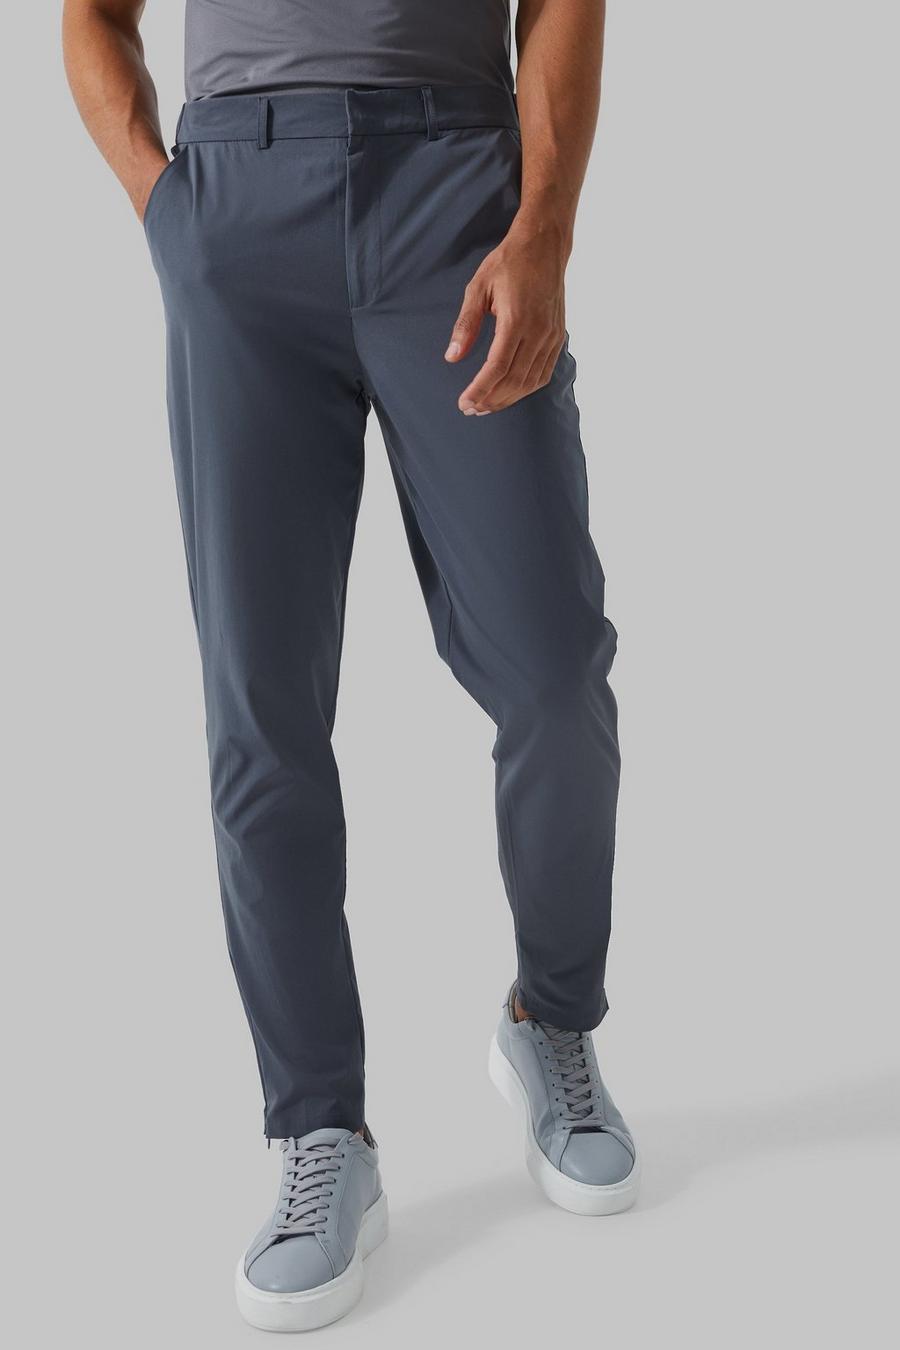 Pantalón MAN Active elástico de golf, Charcoal gris